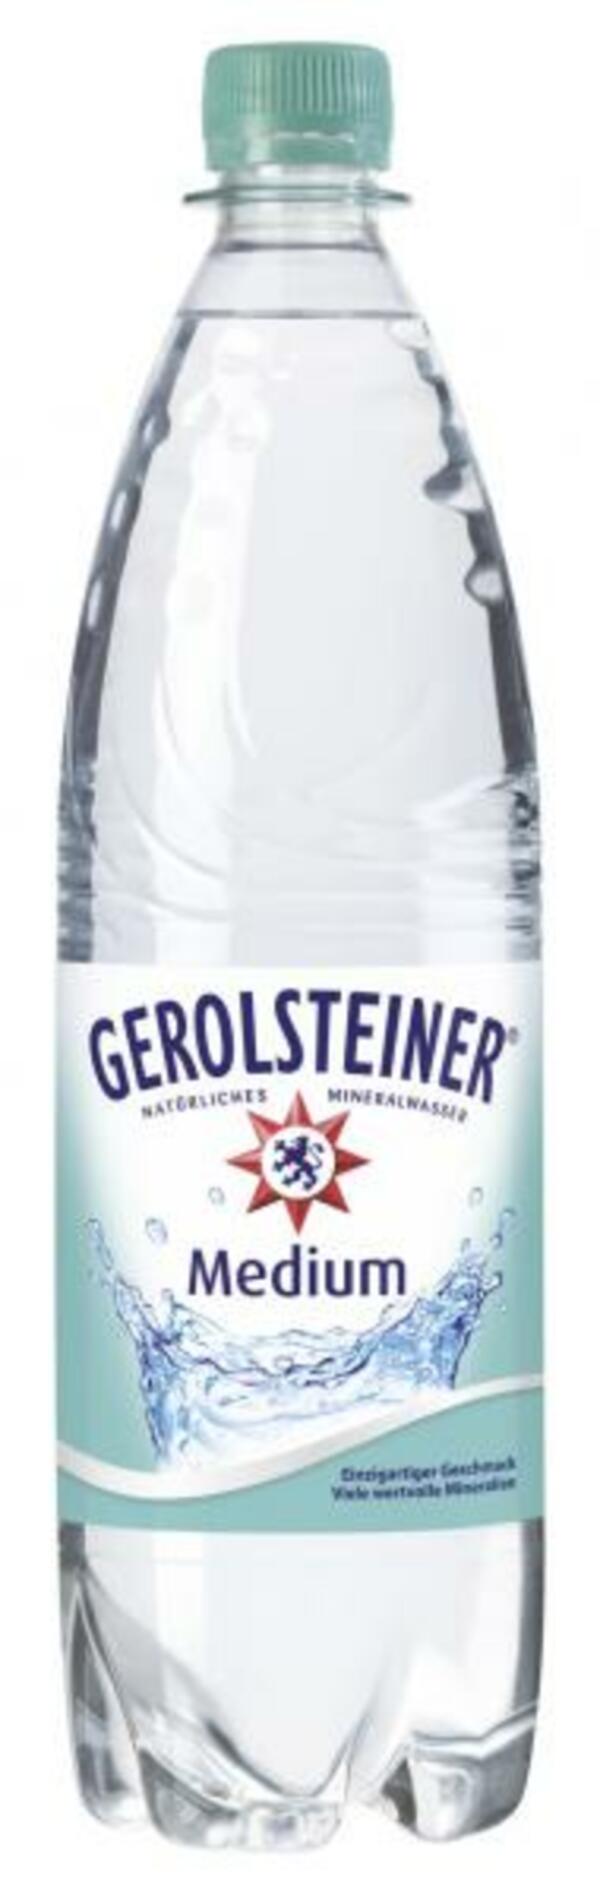 Bild 1 von Gerolsteiner Mineralwasser medium (Mehrweg)